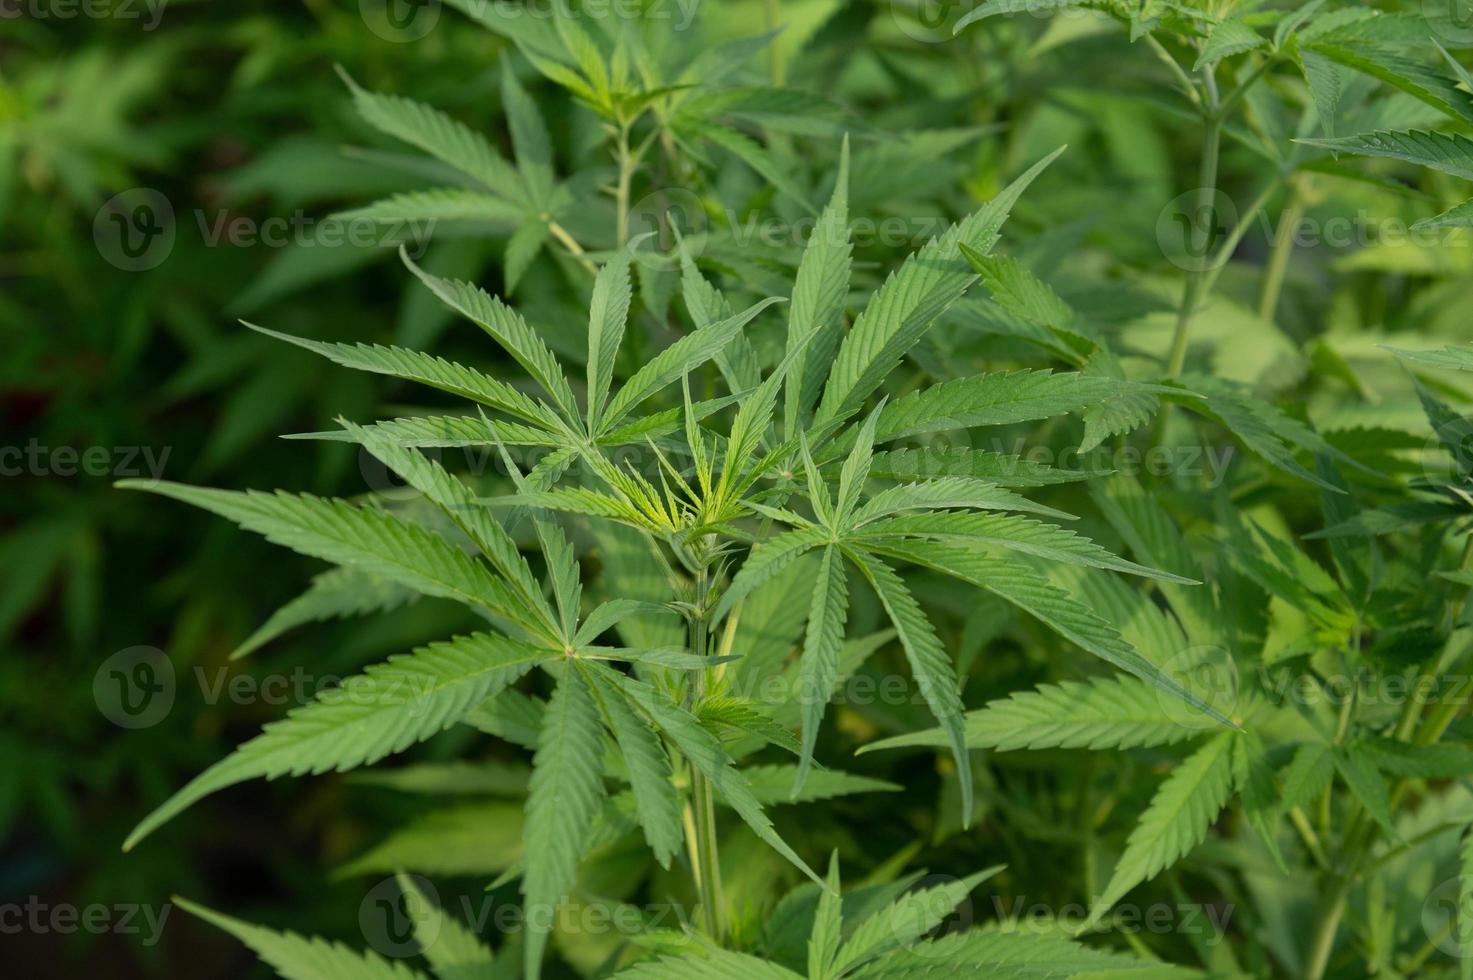 hennep marihuana planten in wetenschap laboratorium voor maken geneeskunde en kruid Product in landschap banier foto